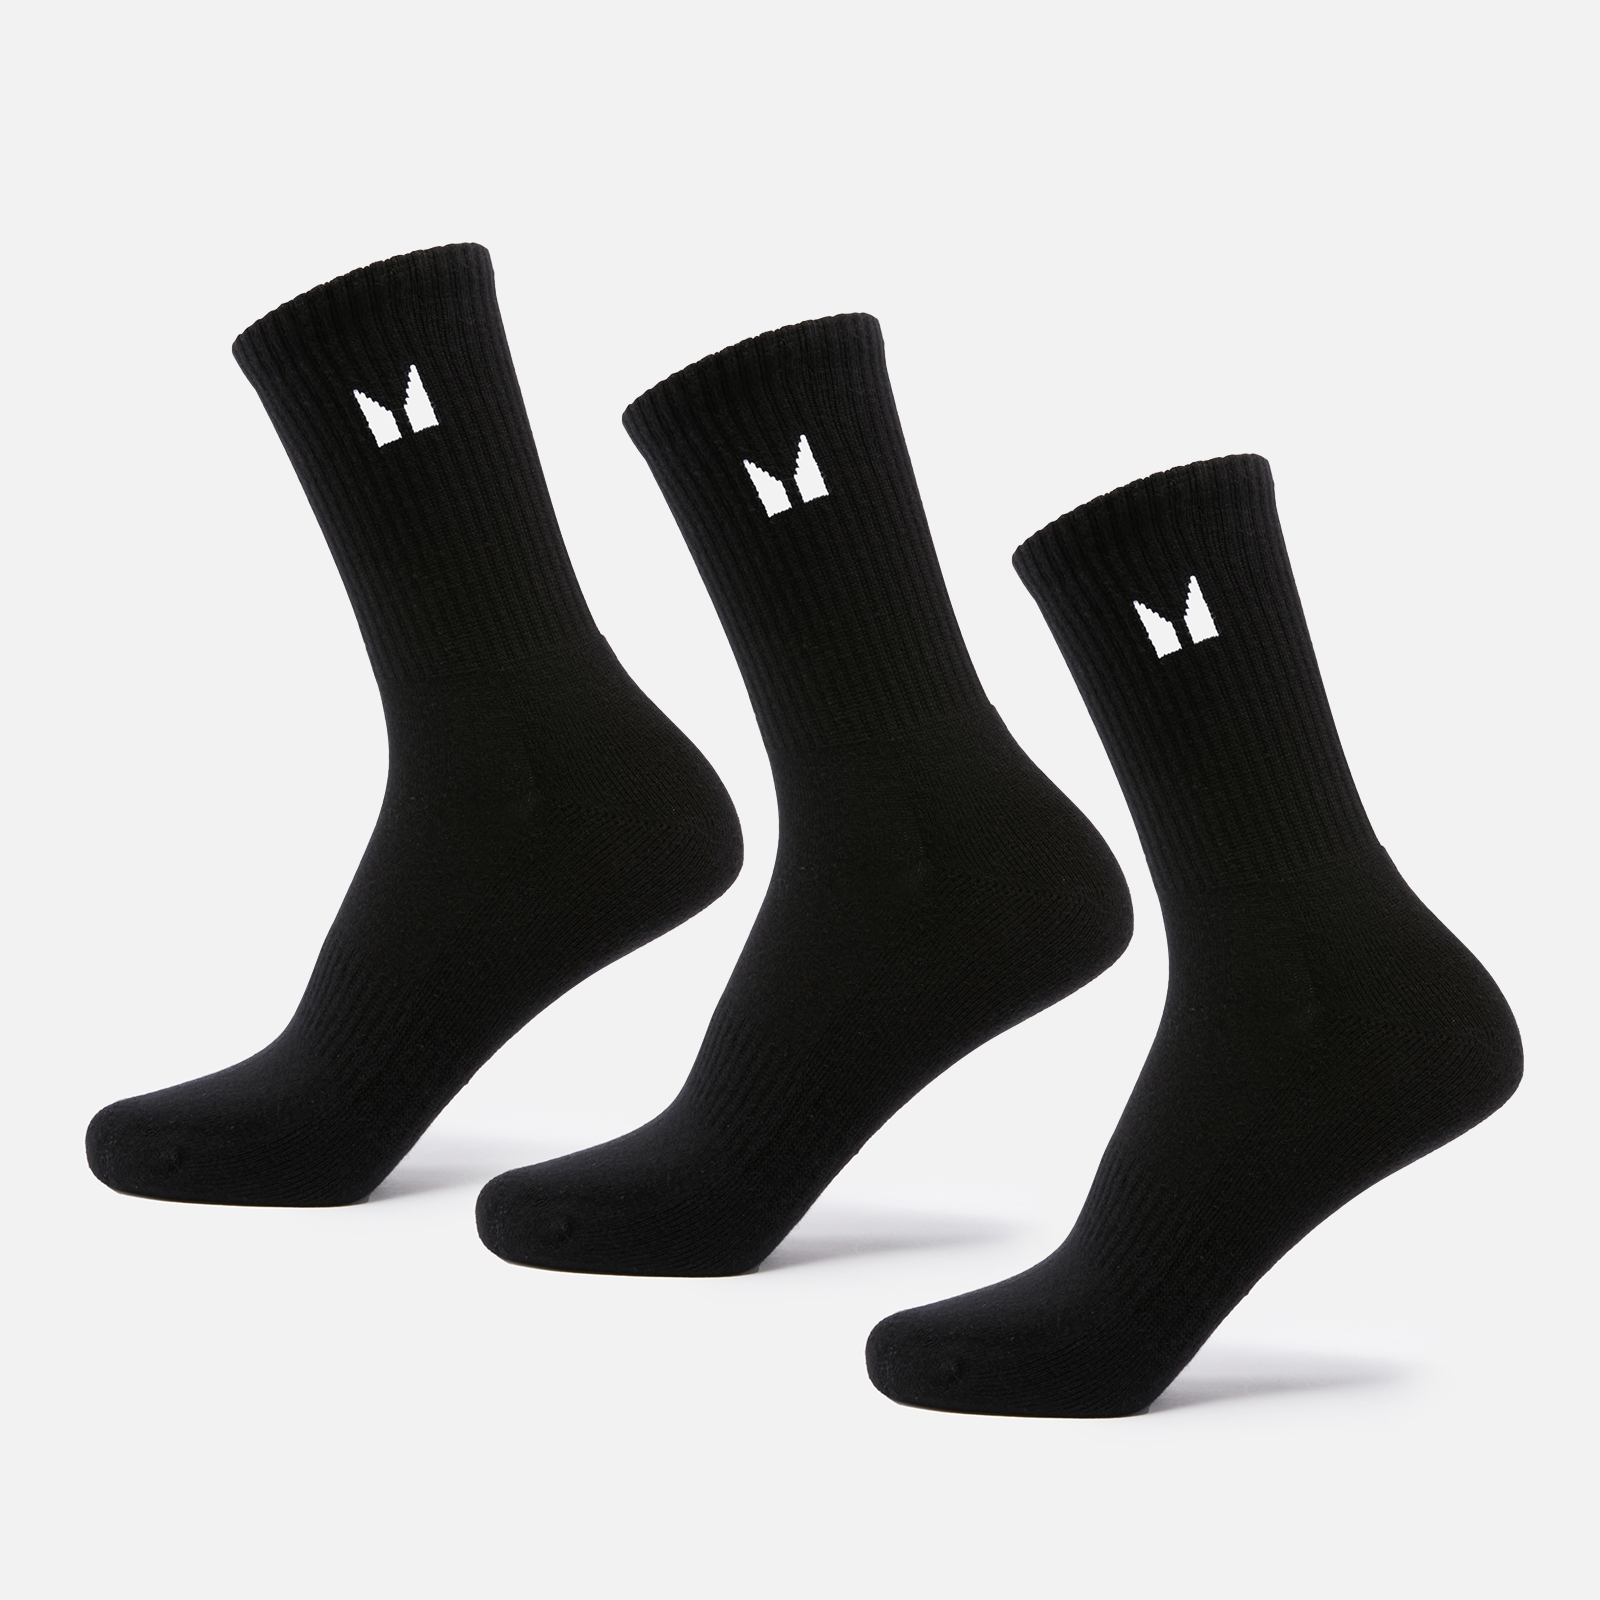 MP Unisex visoke čarape (pakiranje od 3 komada) - crne - UK 2-5